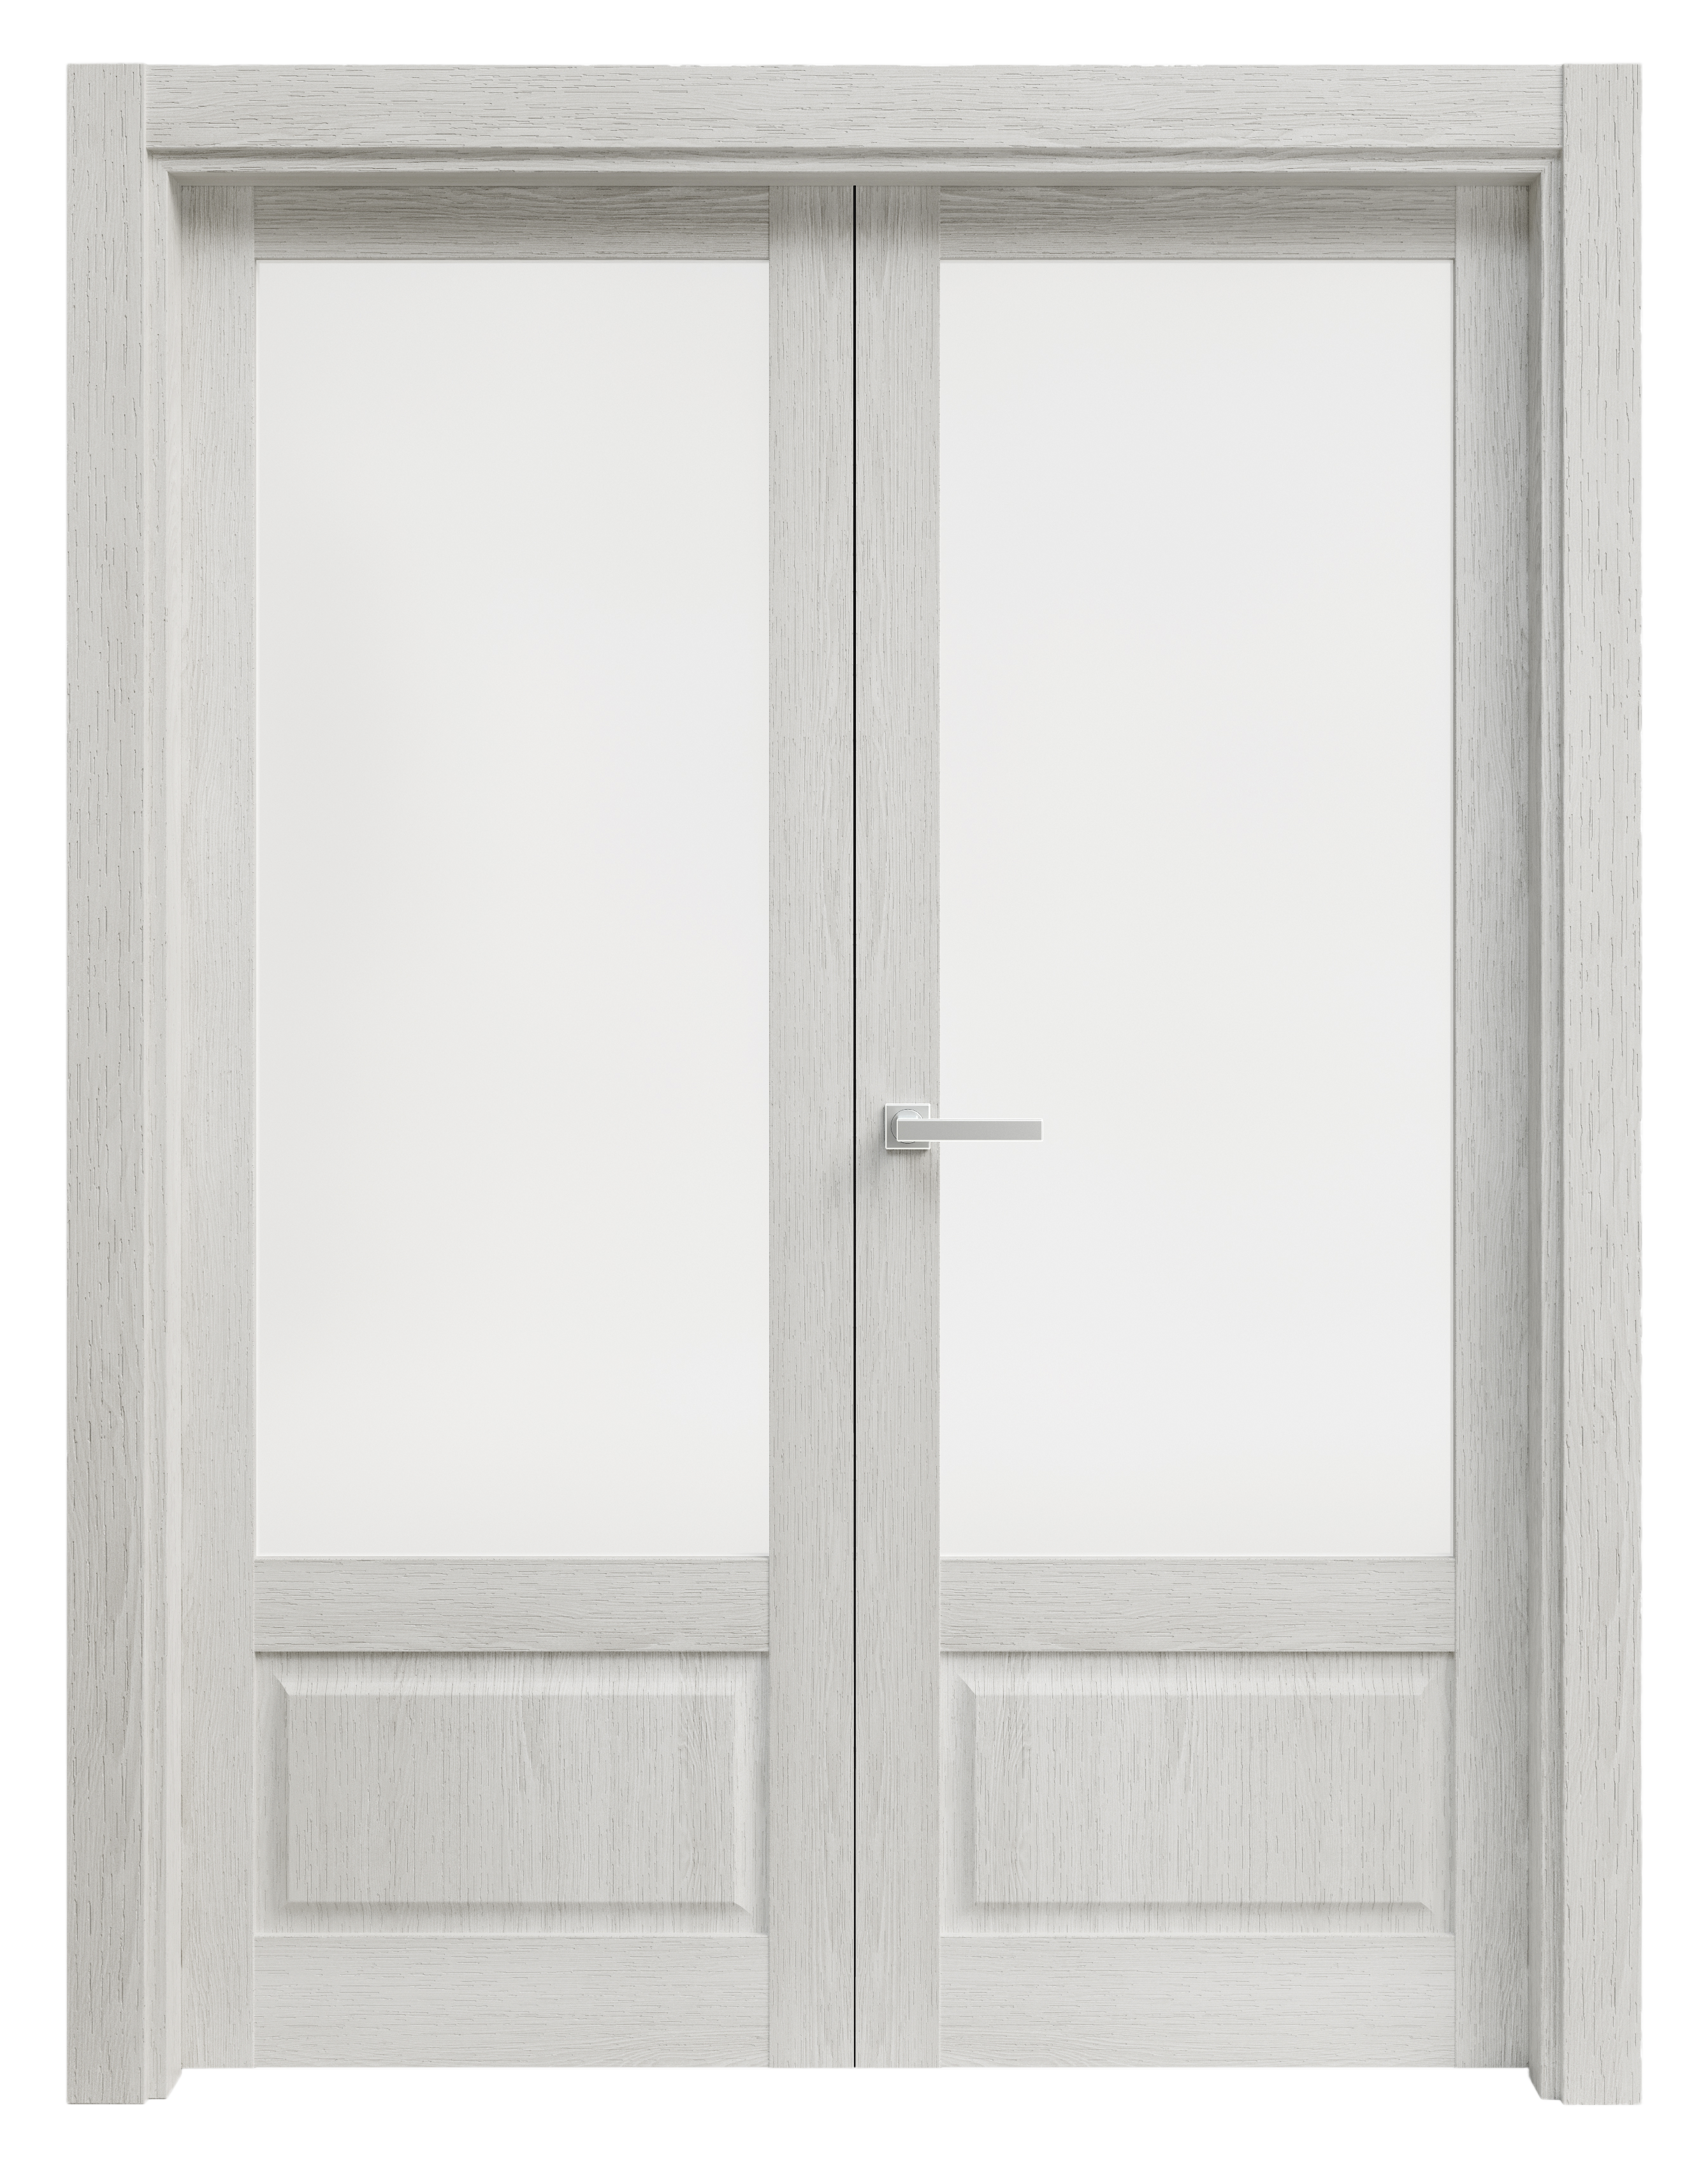 Puerta abatible sofia blanca line plus con cristal blanco izquierda de 125 c